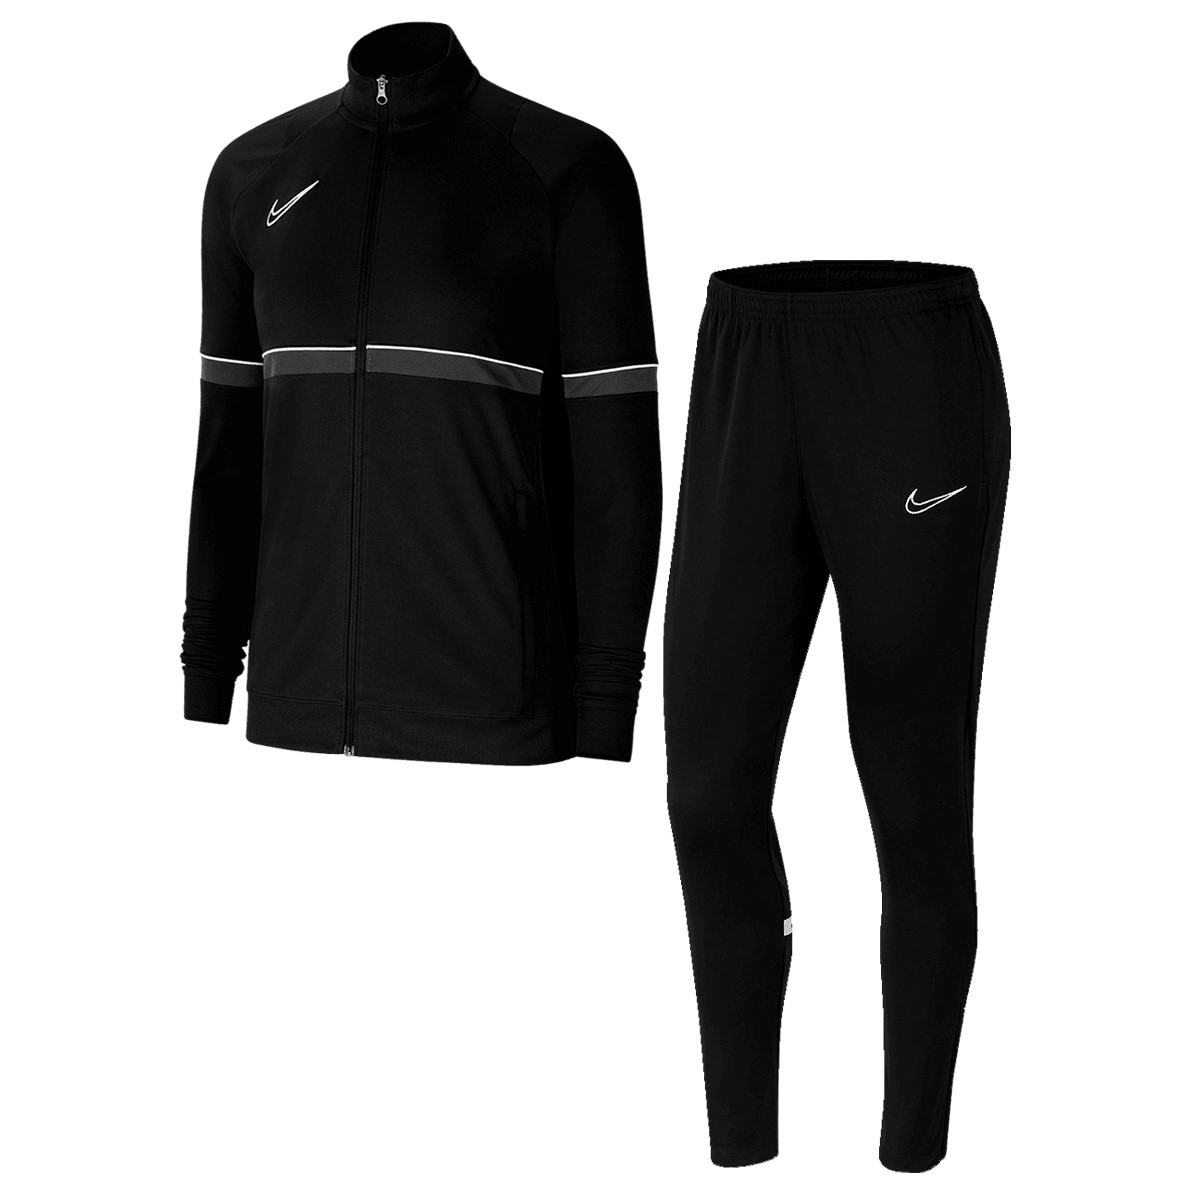 Bild zu Damen Trainingsanzug Nike Academy 21 für 35,99€ (Vergleich: 47,27€)